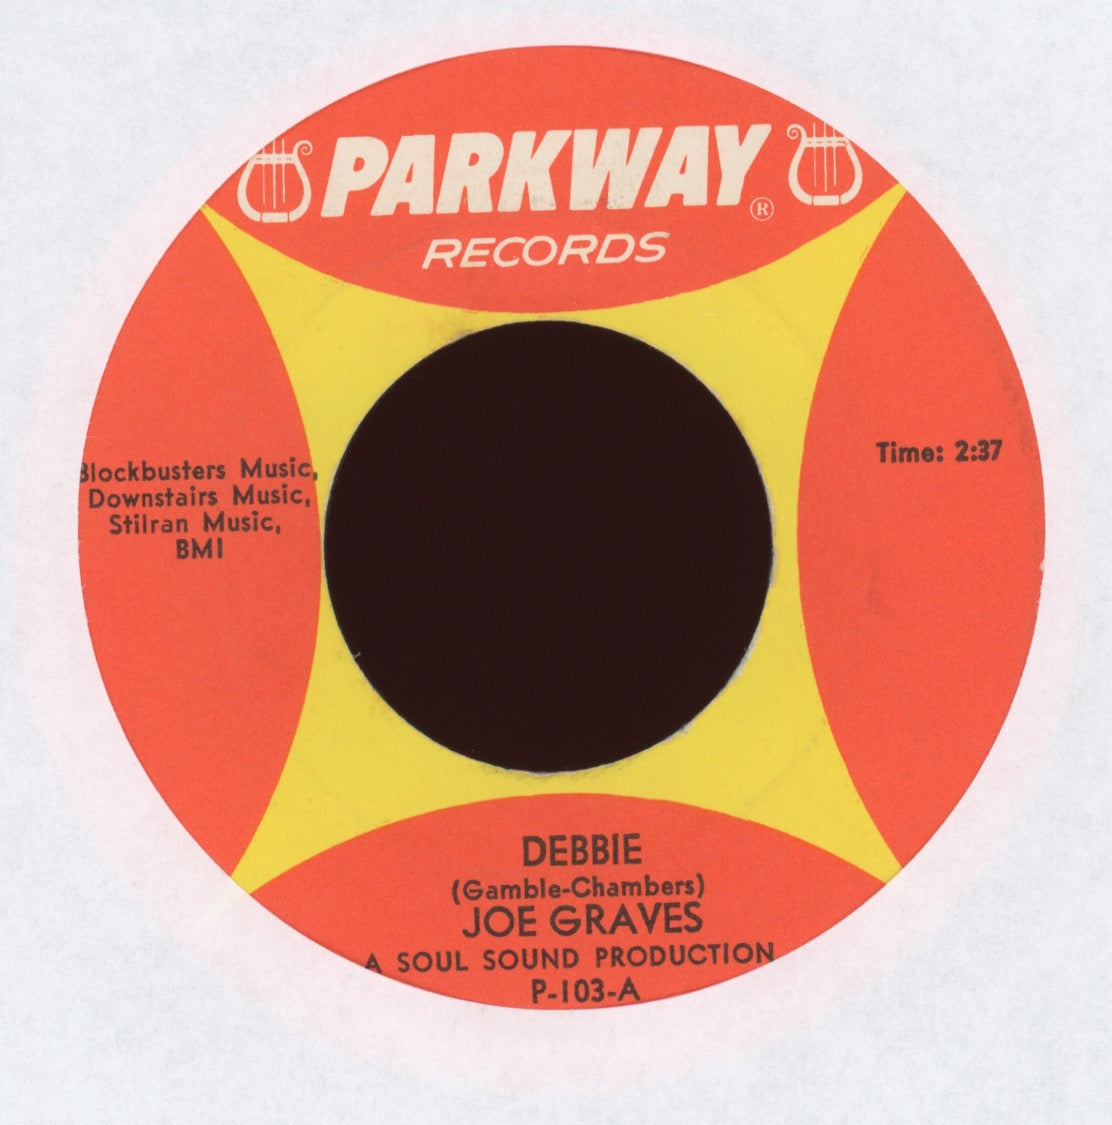 Joe Graves - Debbie on Parkway